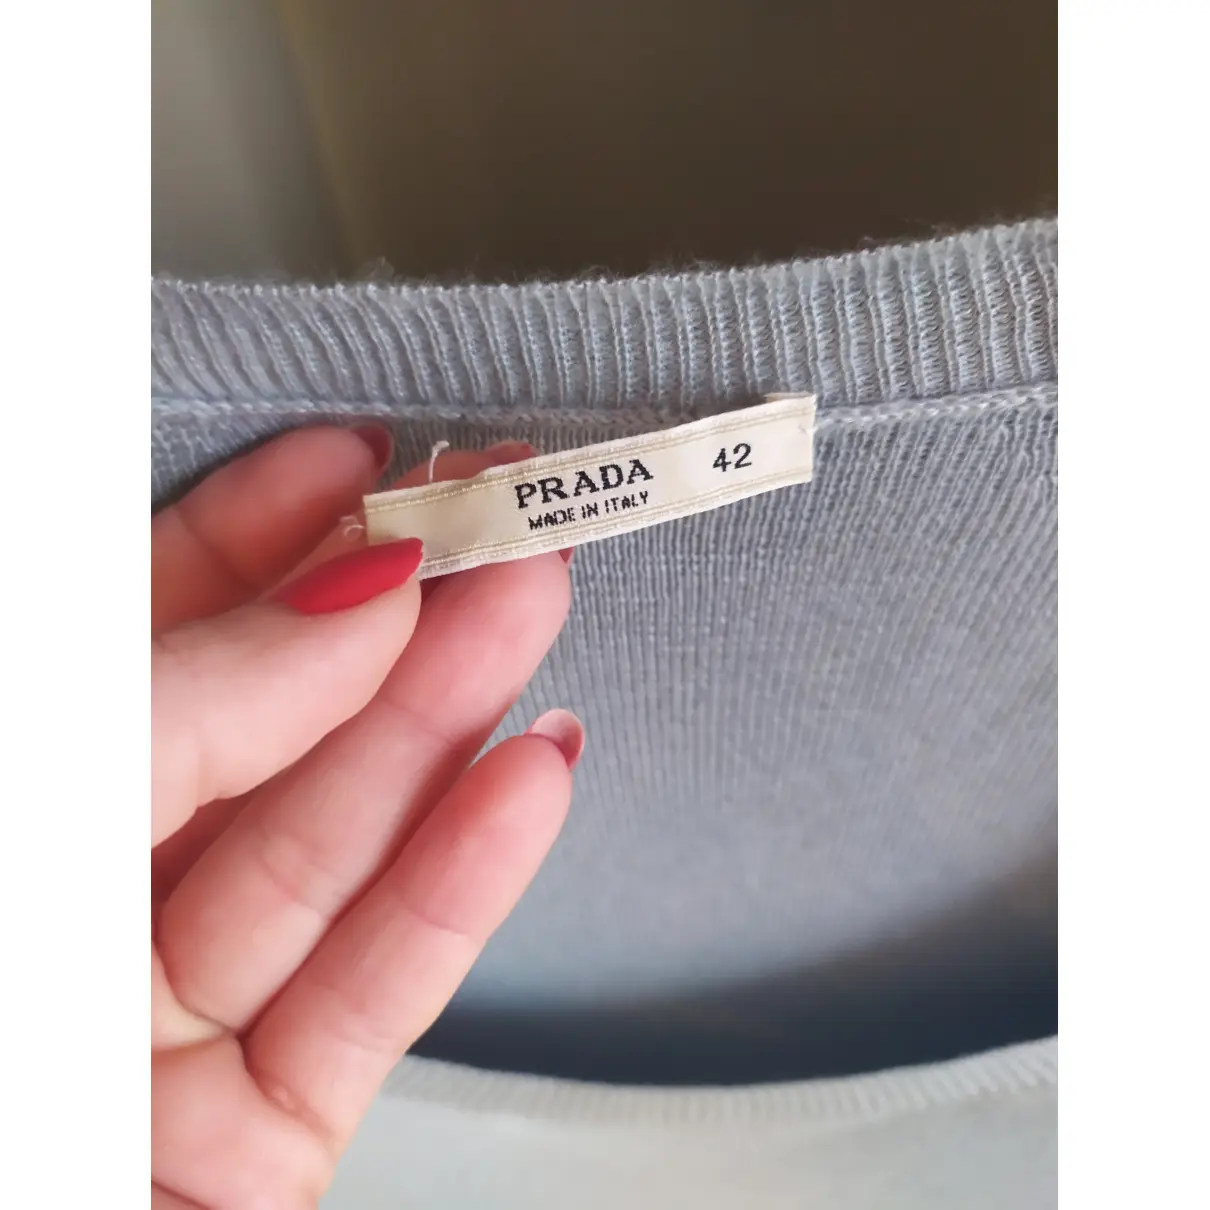 Buy Prada Wool jumper online